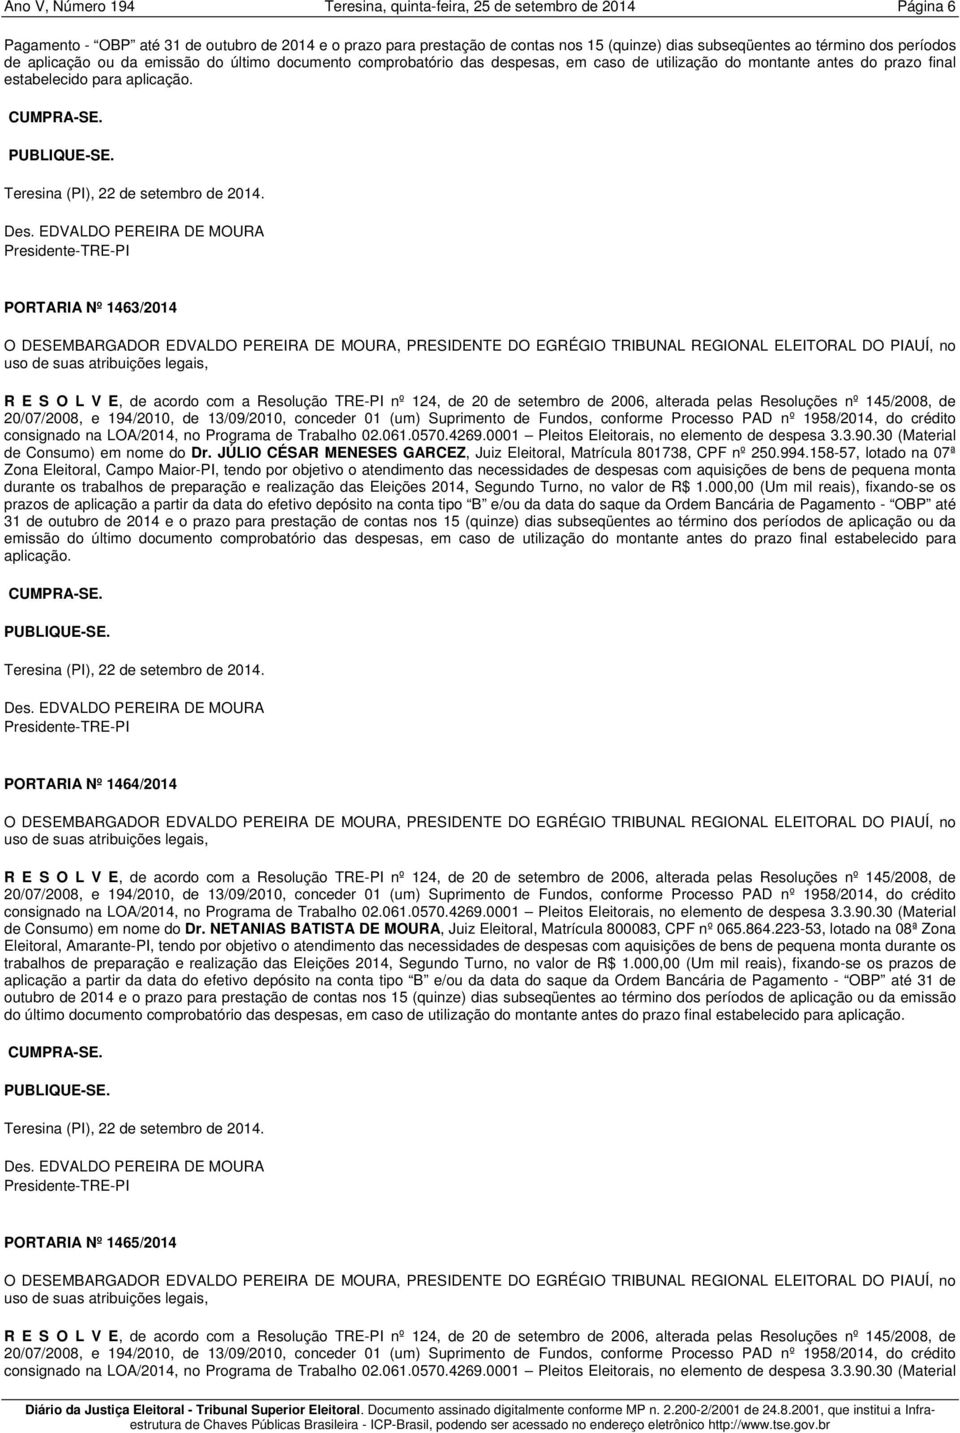 PORTARIA Nº 1463/2014 de Consumo) em nome do Dr. JÚLIO CÉSAR MENESES GARCEZ, Juiz Eleitoral, Matrícula 801738, CPF nº 250.994.